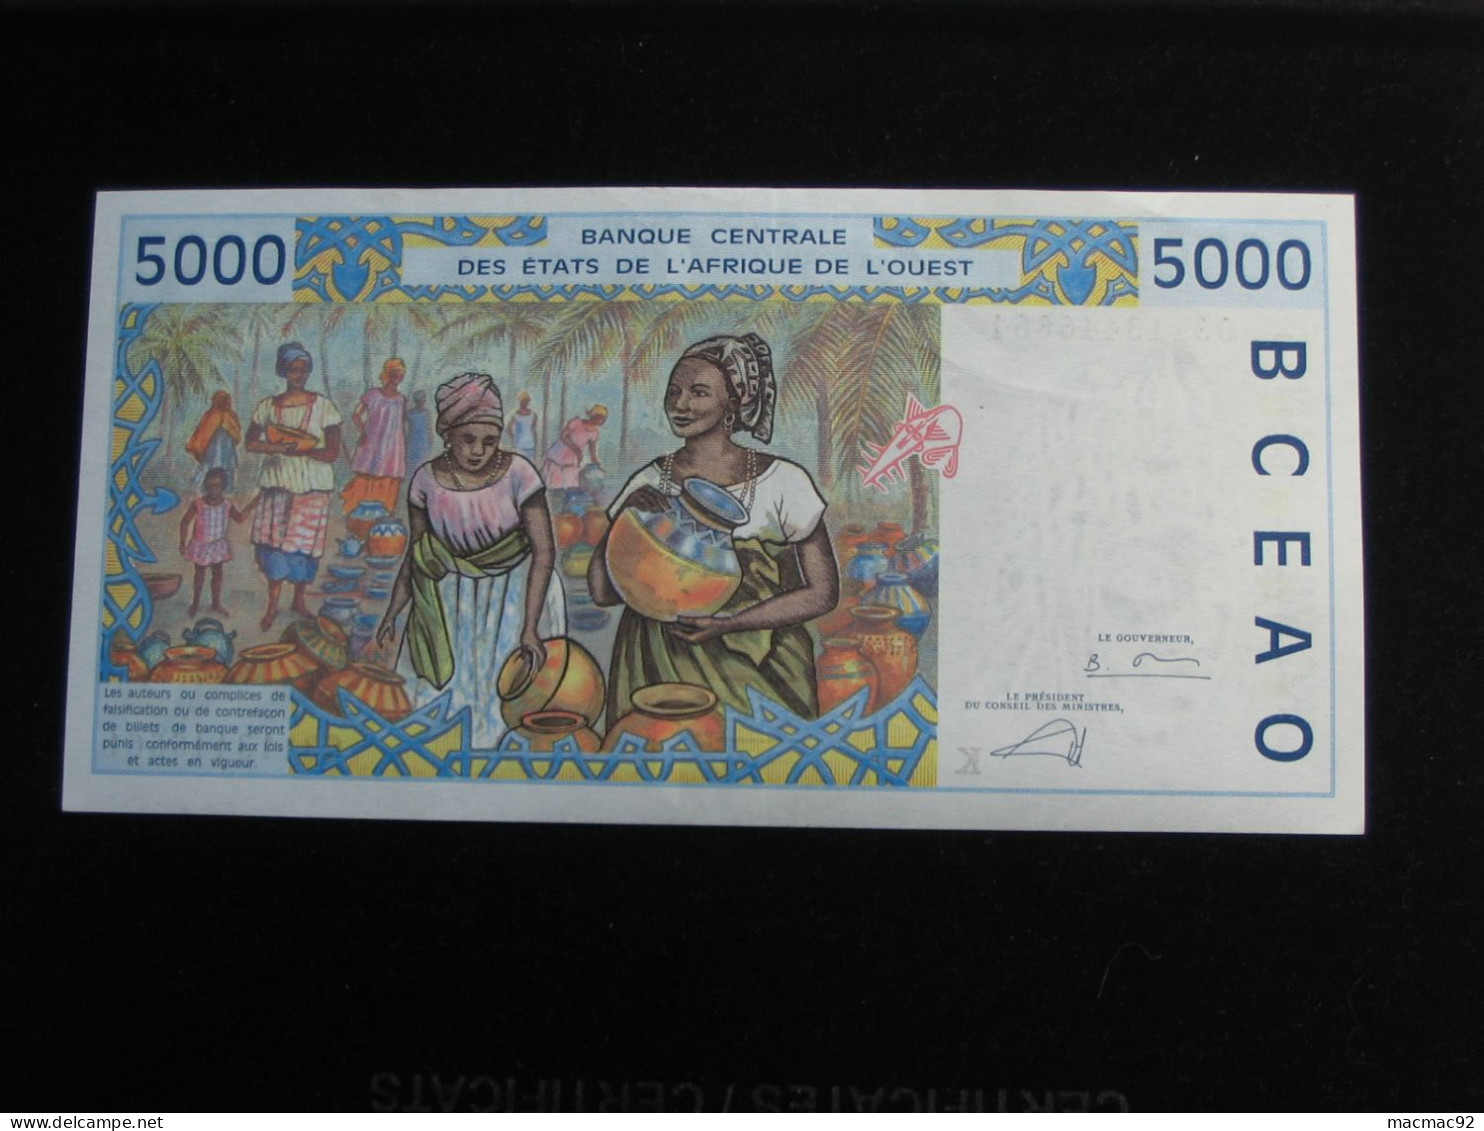 5000 Cinq Mille Francs 2002  - SENEGAL - Banque Centrale Des états De L'Afrique De L'ouest  **** EN ACHAT IMMEDIAT **** - Senegal